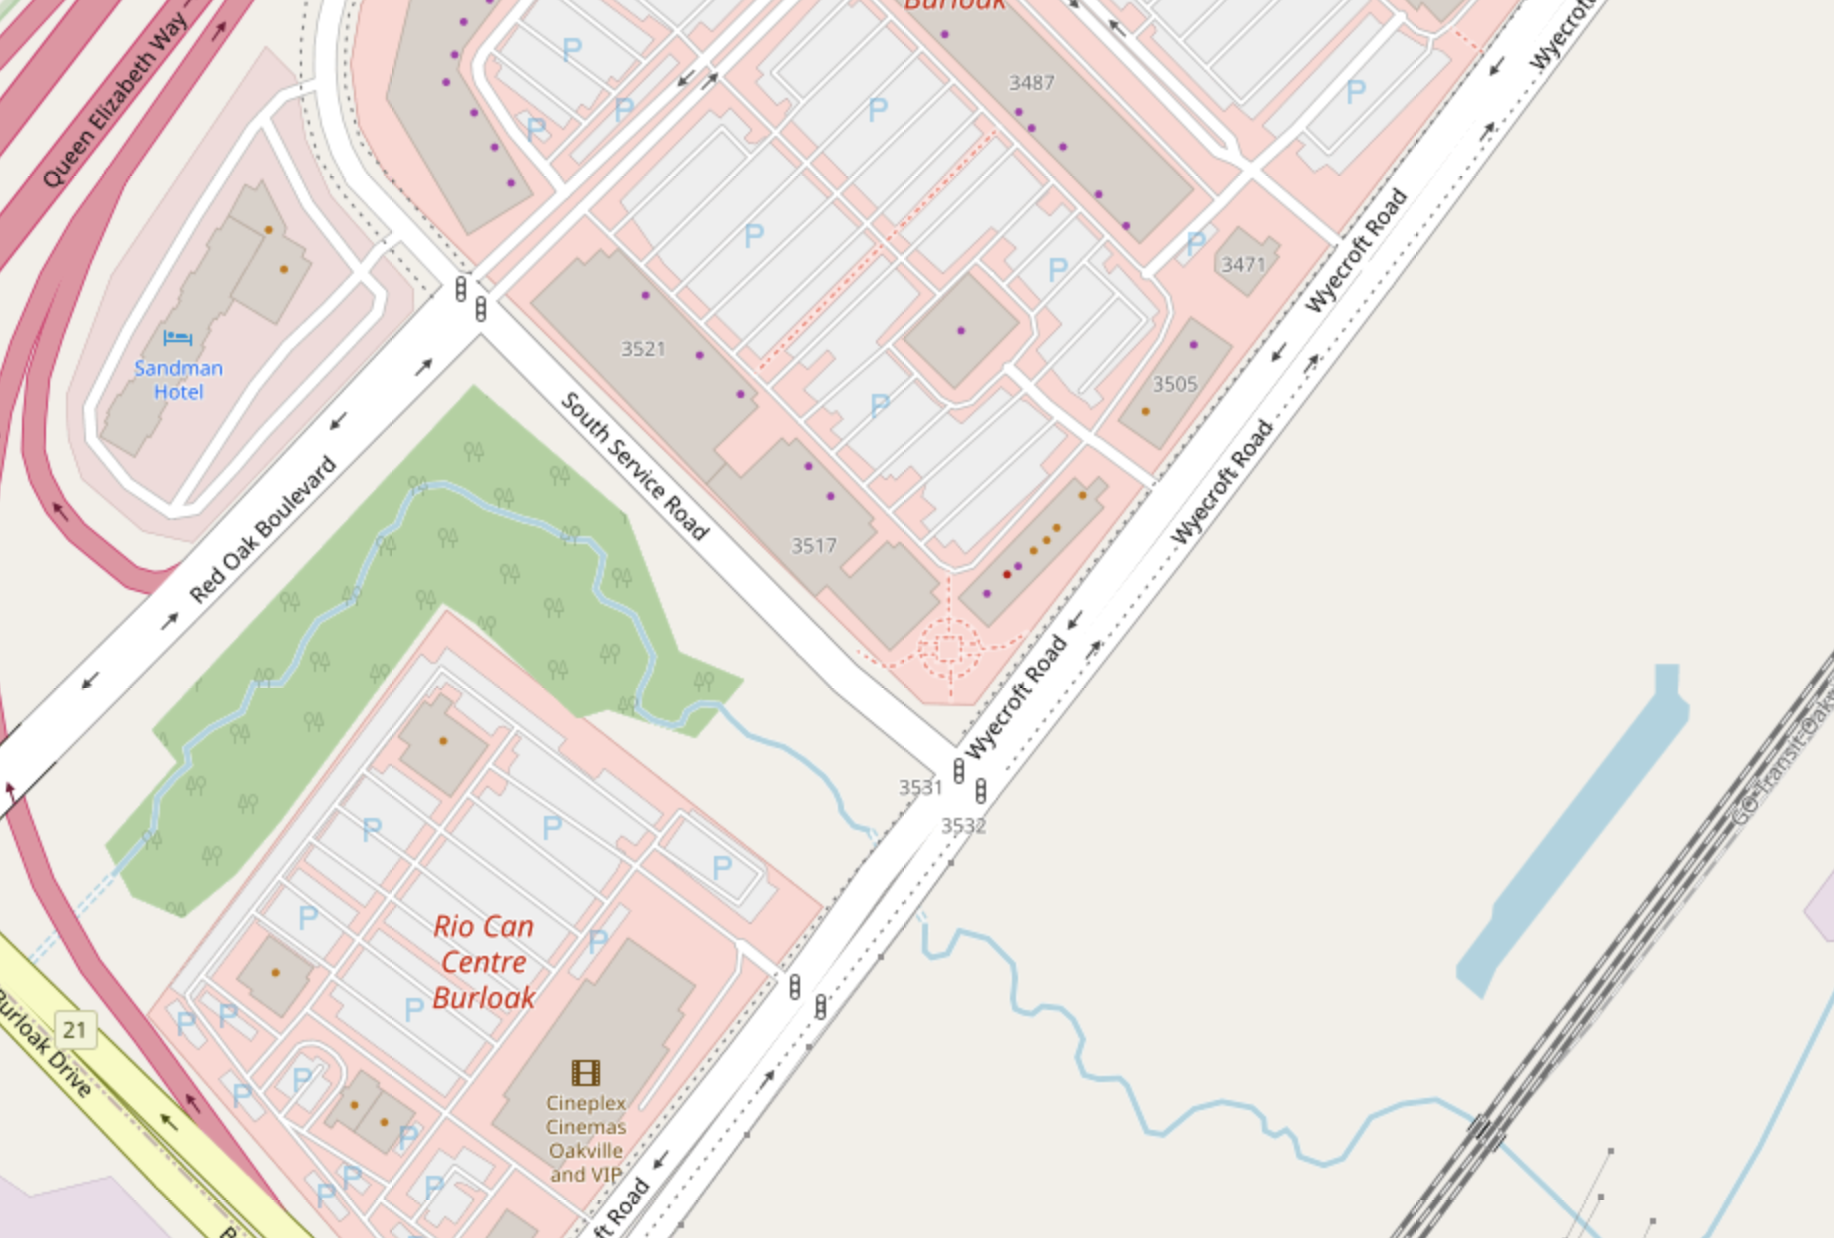 Lot on Wyecroft Road | Openstreetmap